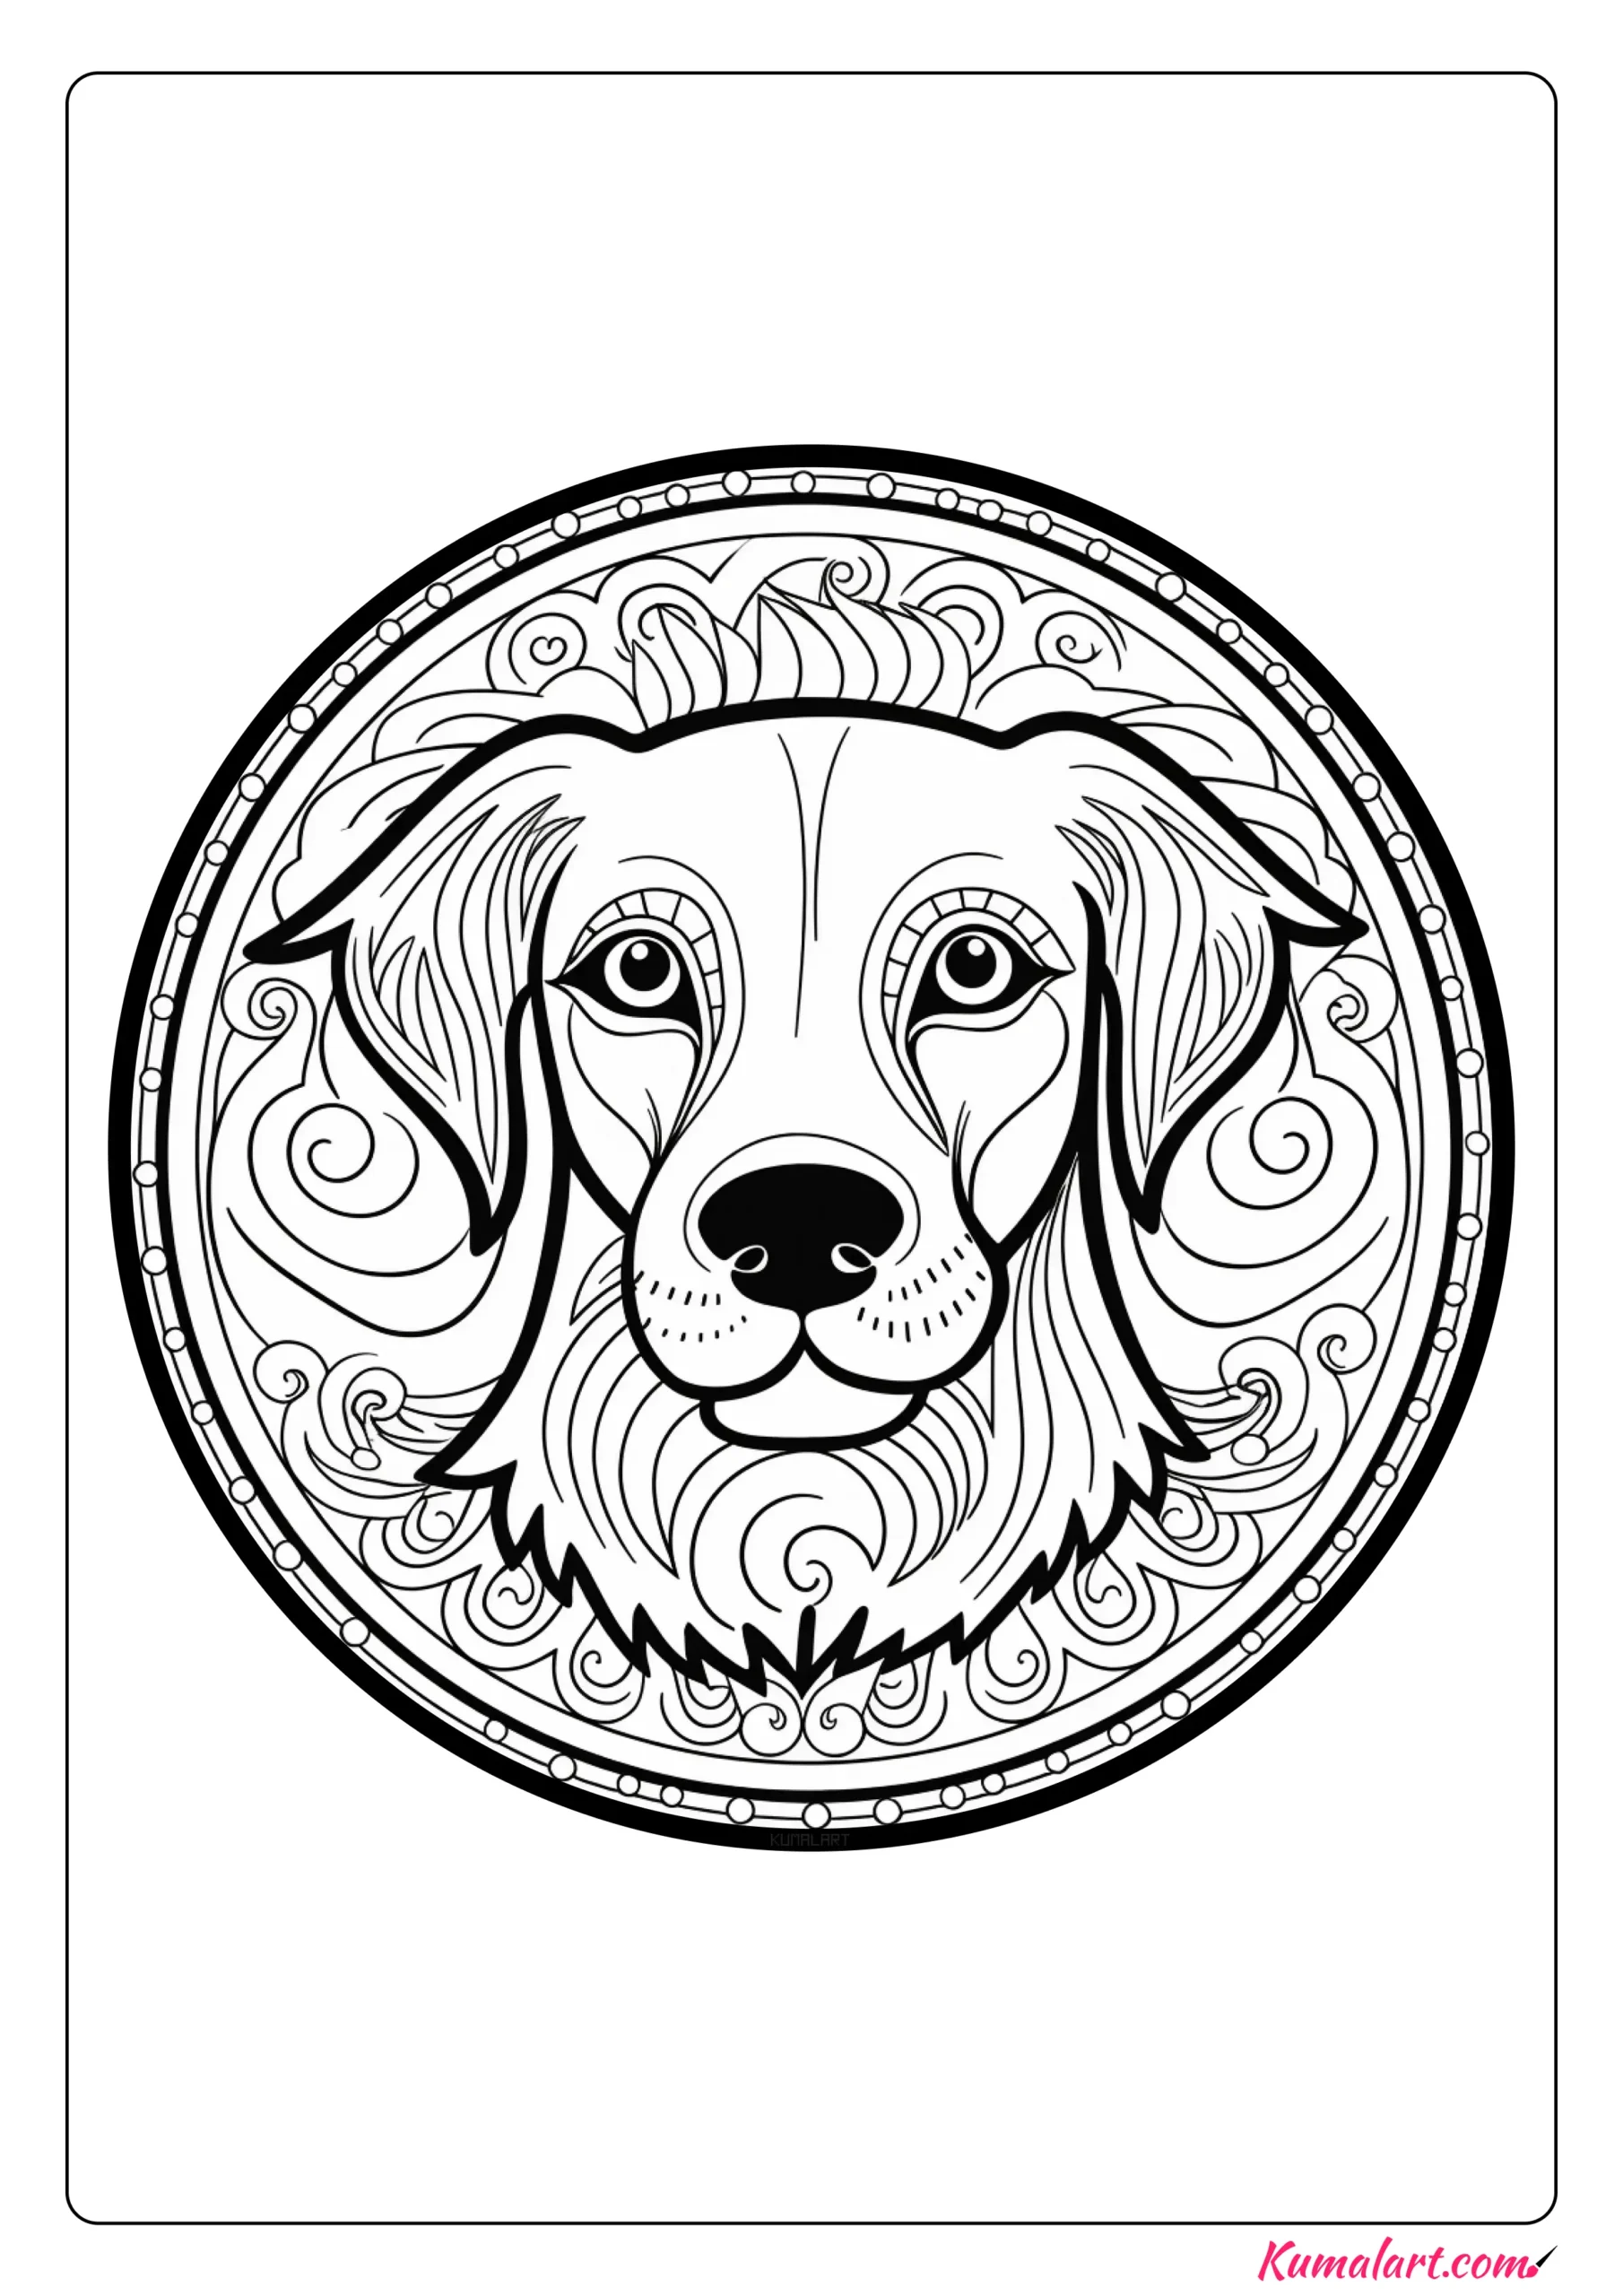 Astra the Dog Mandala Coloring Page